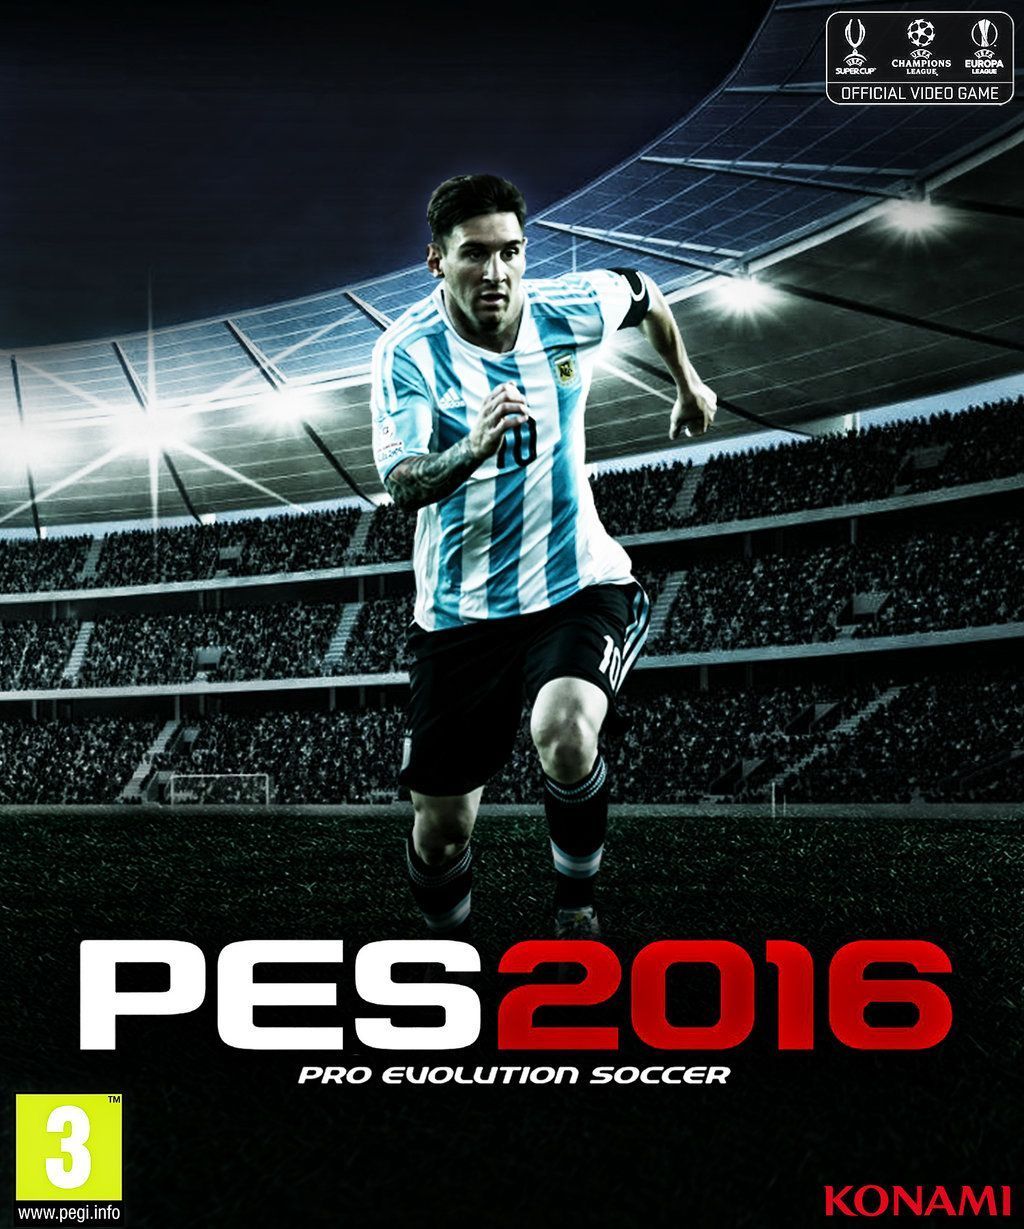 Pro Evolution Soccer 2016 Messi Cover by RakaGFX on DeviantArt